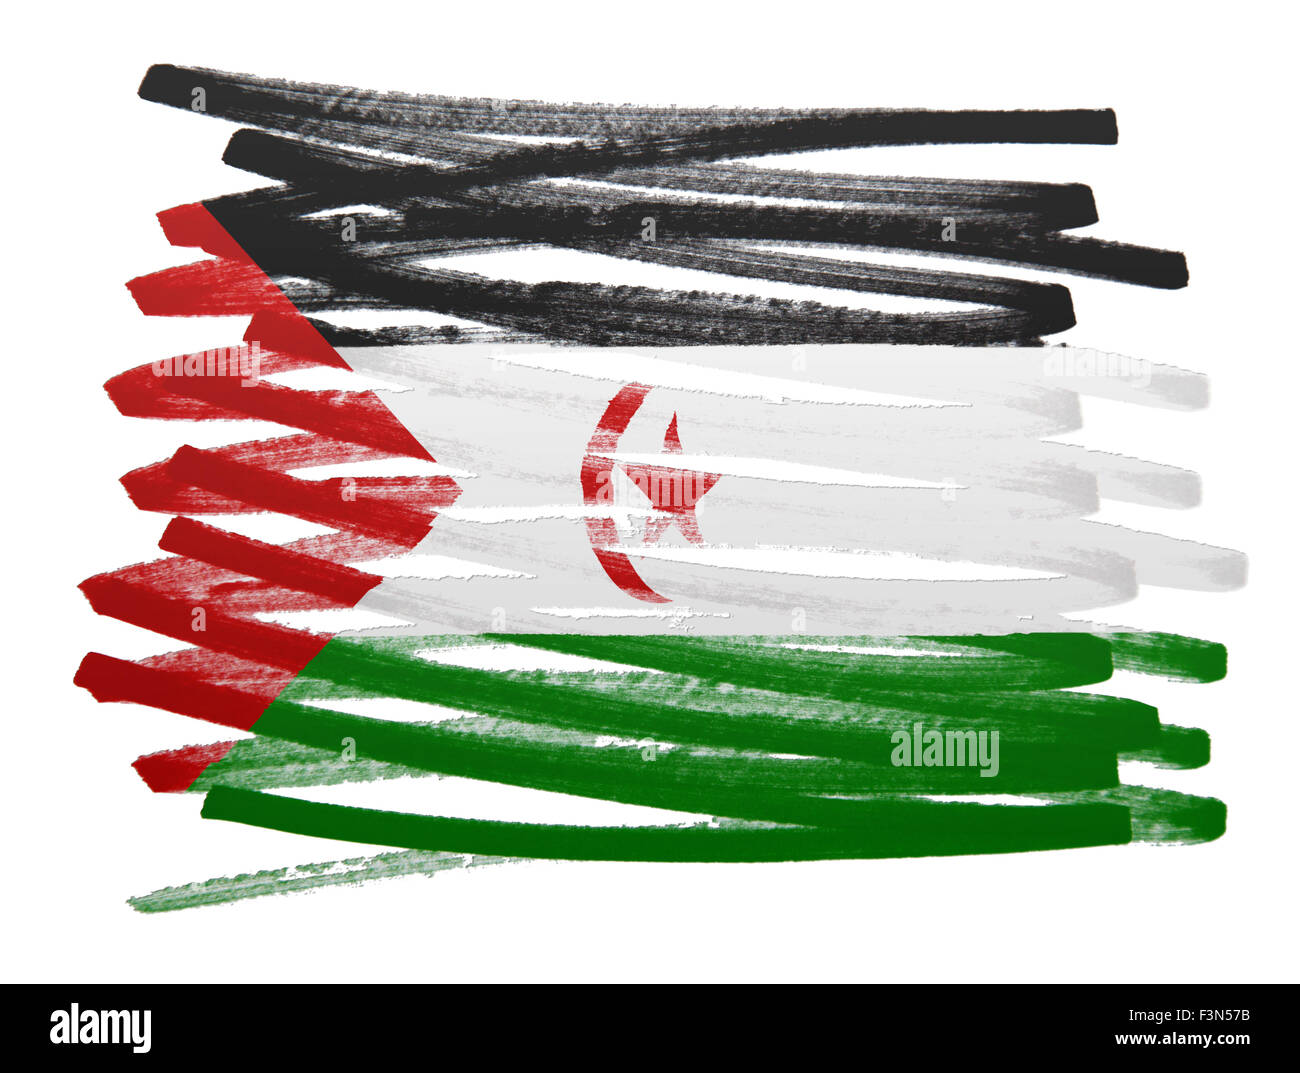 Flag illustration réalisée avec stylo - Sahara Occidental Banque D'Images